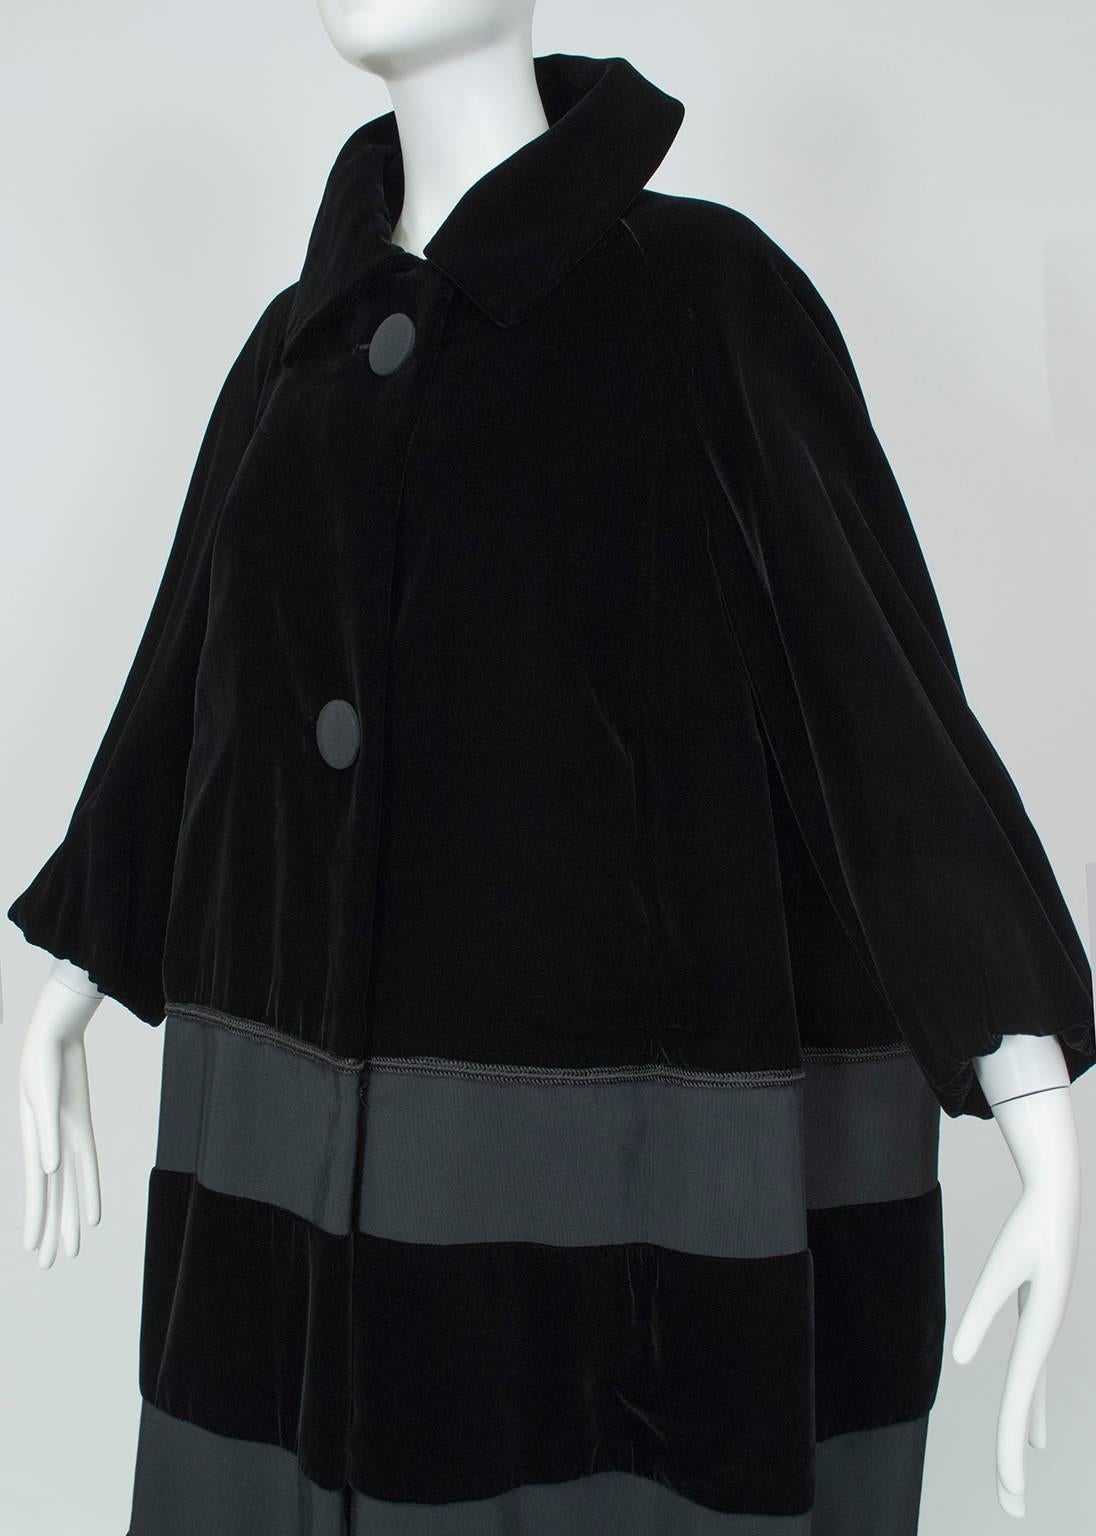 Women's Black Velvet and Faille Stripe Oversized Amorphous Teddy Bear Coat - L-XL, 1960s